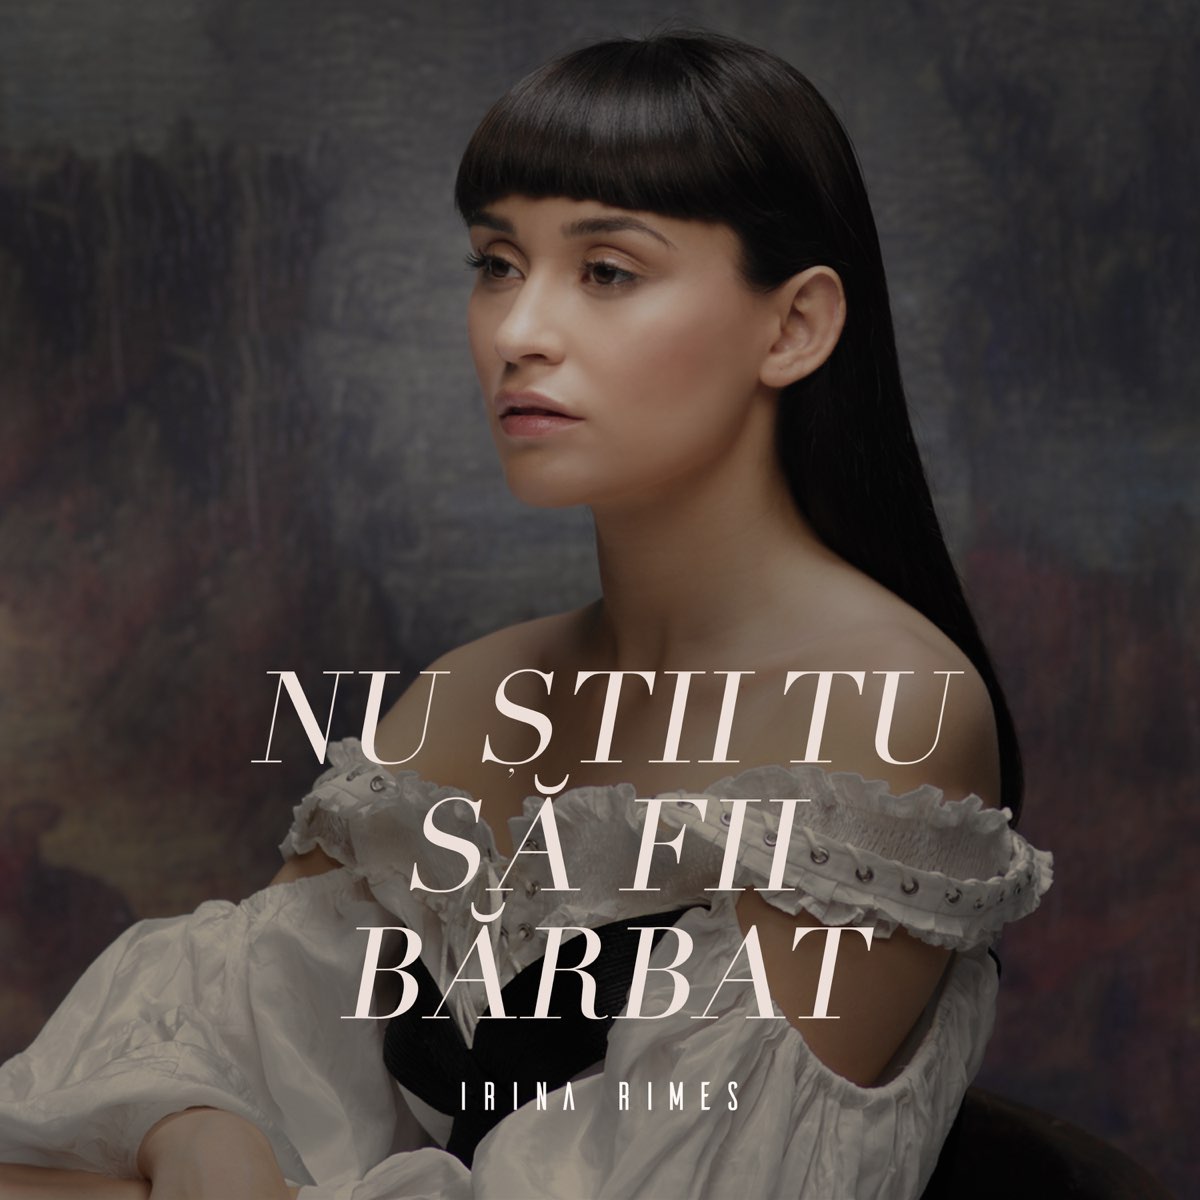 Nu Stii Tu Sa Fii Barbat - Single by Irina Rimes on Apple Music